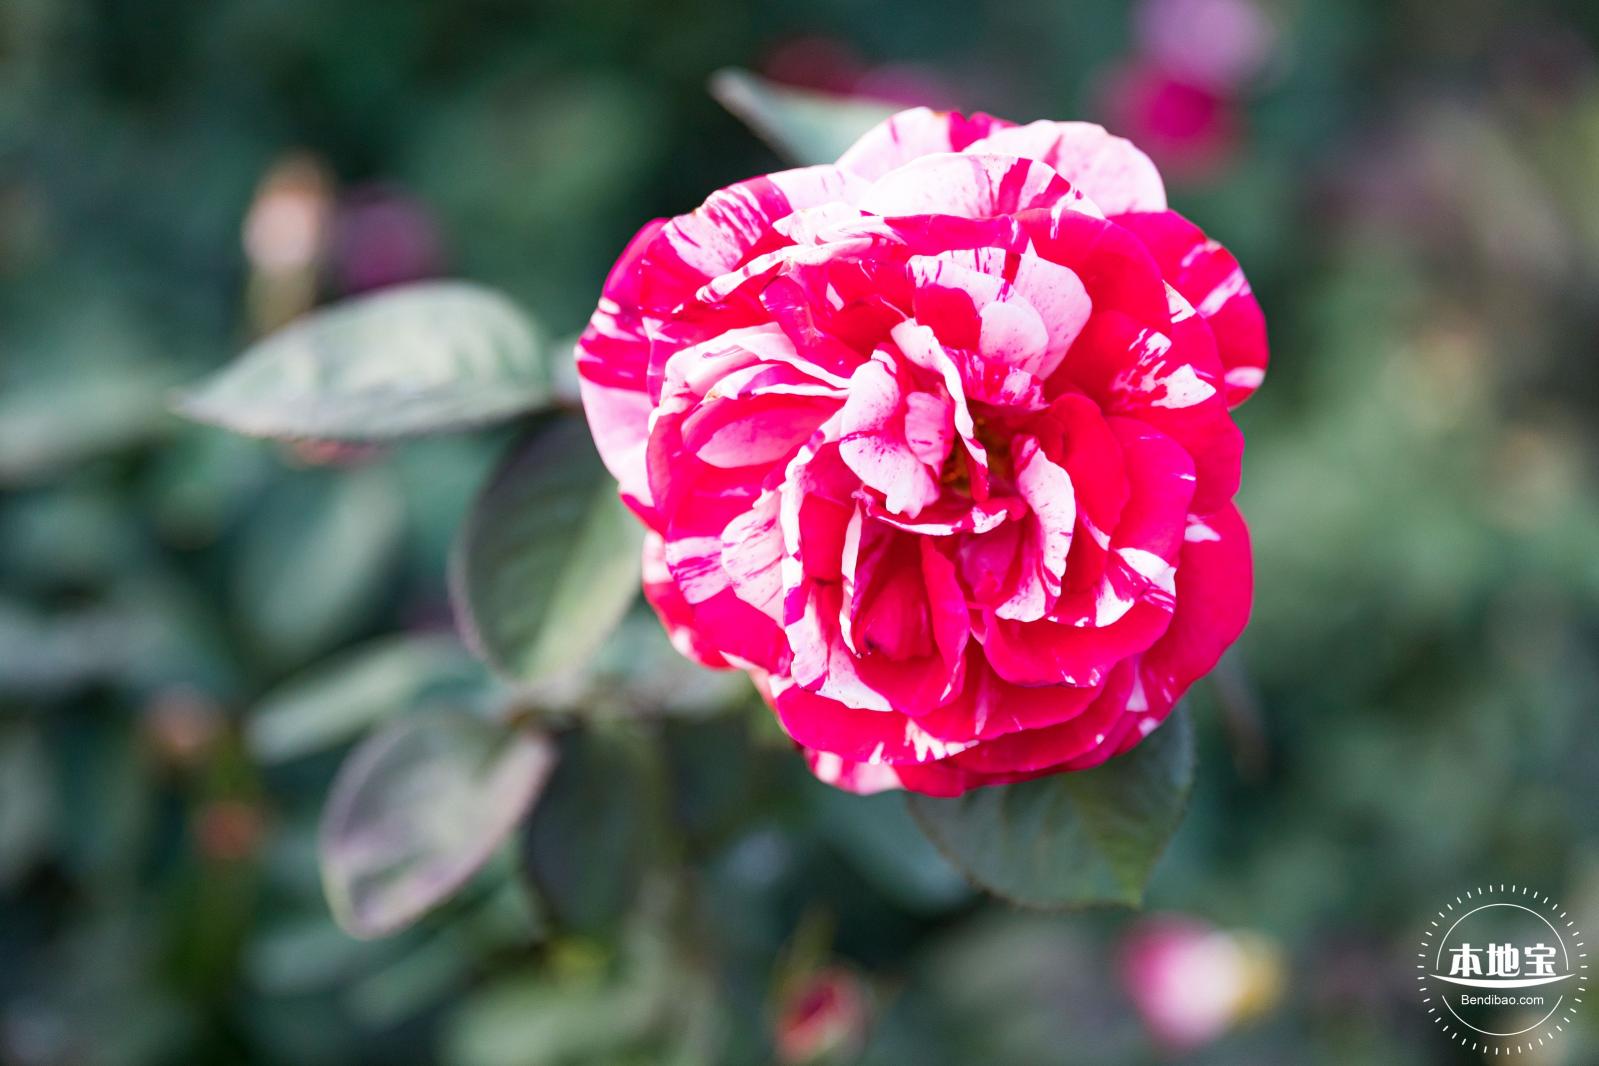 玫瑰园中的高粉色攀岩玫瑰灌木 库存照片. 图片 包括有 非常, 玫瑰, 庭院, 灌木, 植物群, 开花的 - 157645416